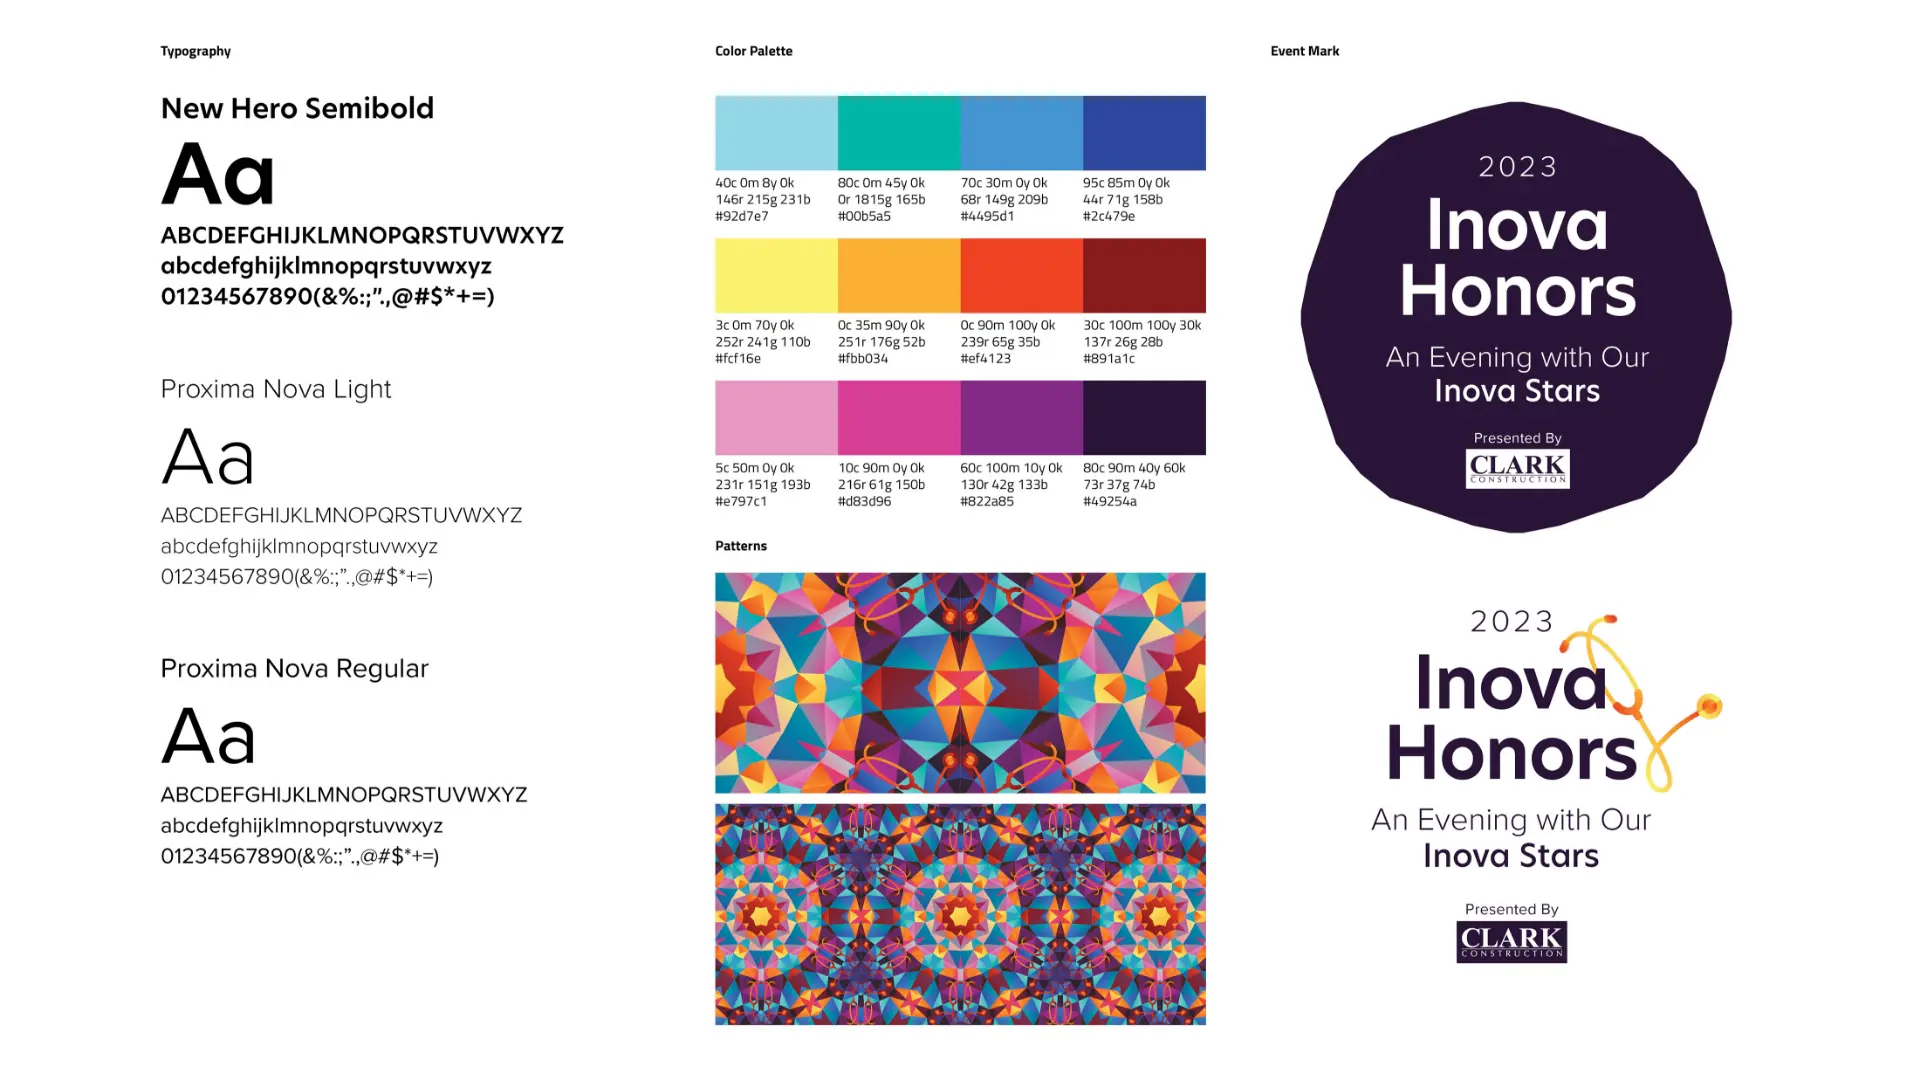 Branding guide sheet for the Inova Honors Gala.